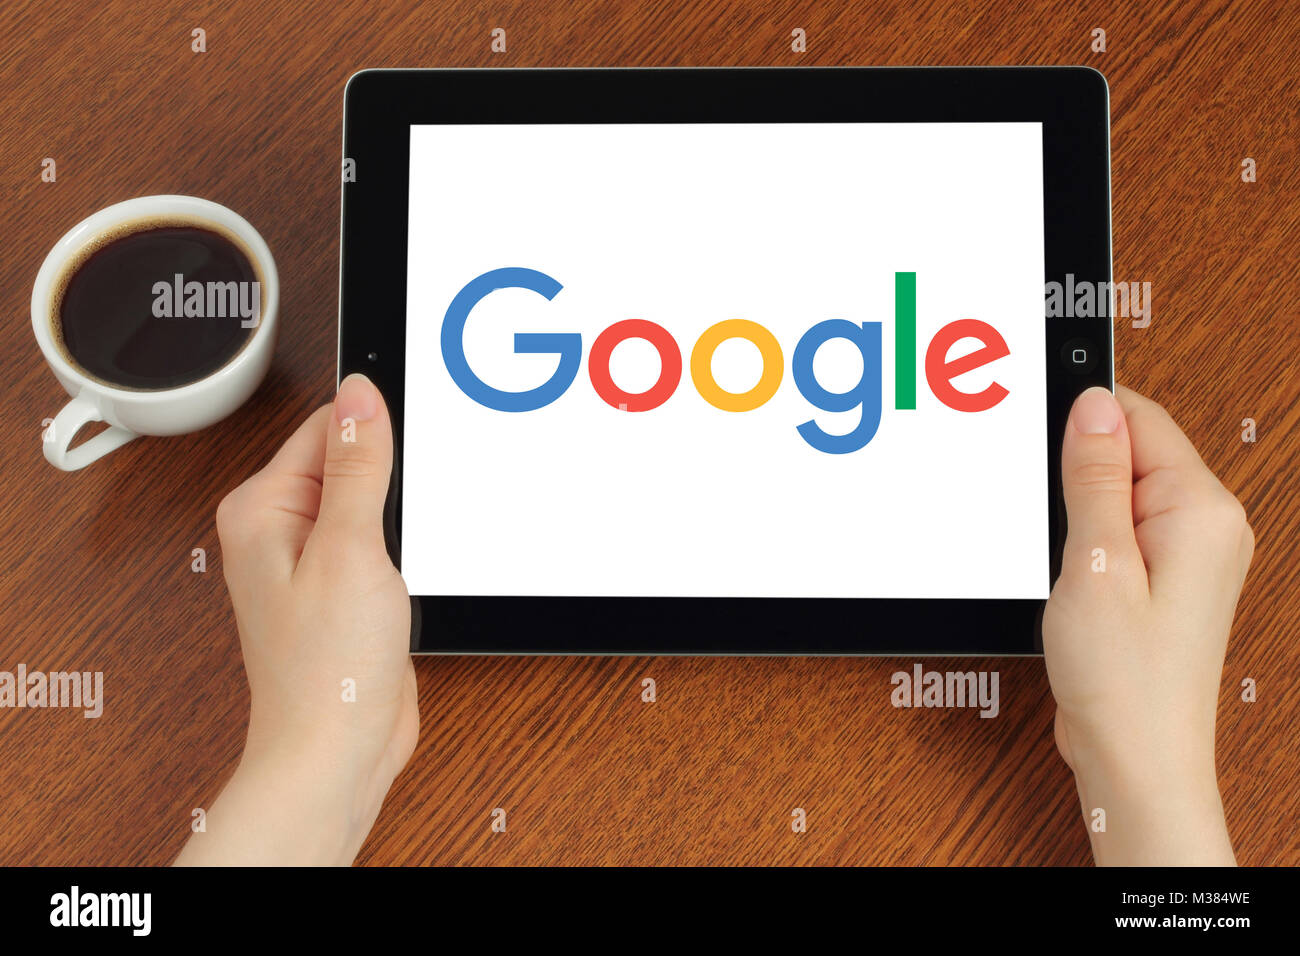 Kiev, Ukraine - 8 août 2017 : Mains maintient iPad avec logo Google sur fond de bois Banque D'Images